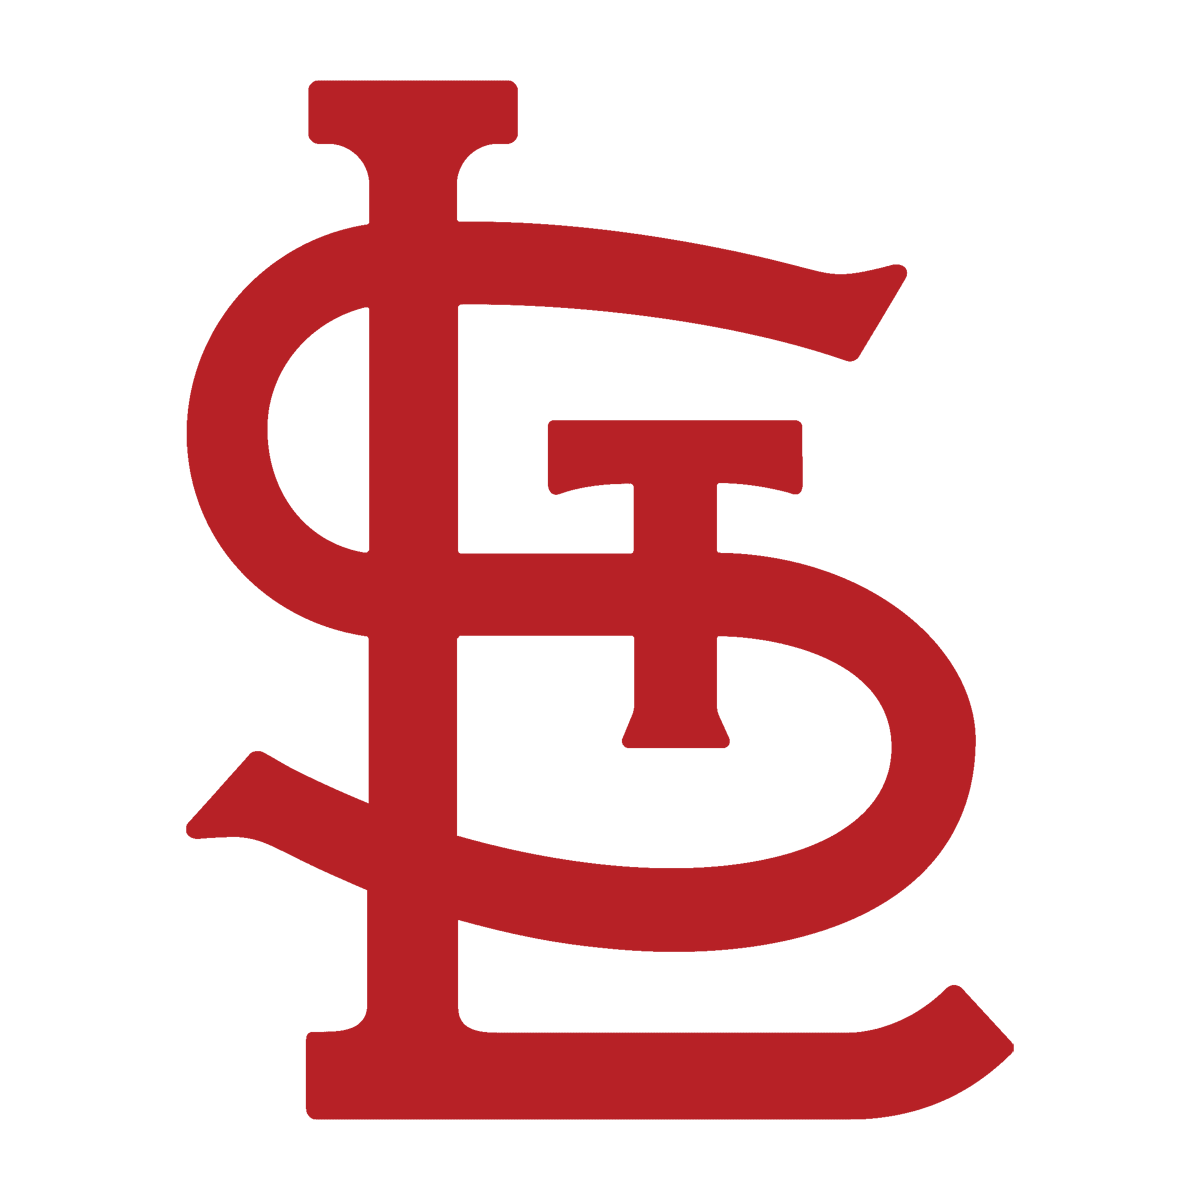 St. Louis Cardinals Symbol